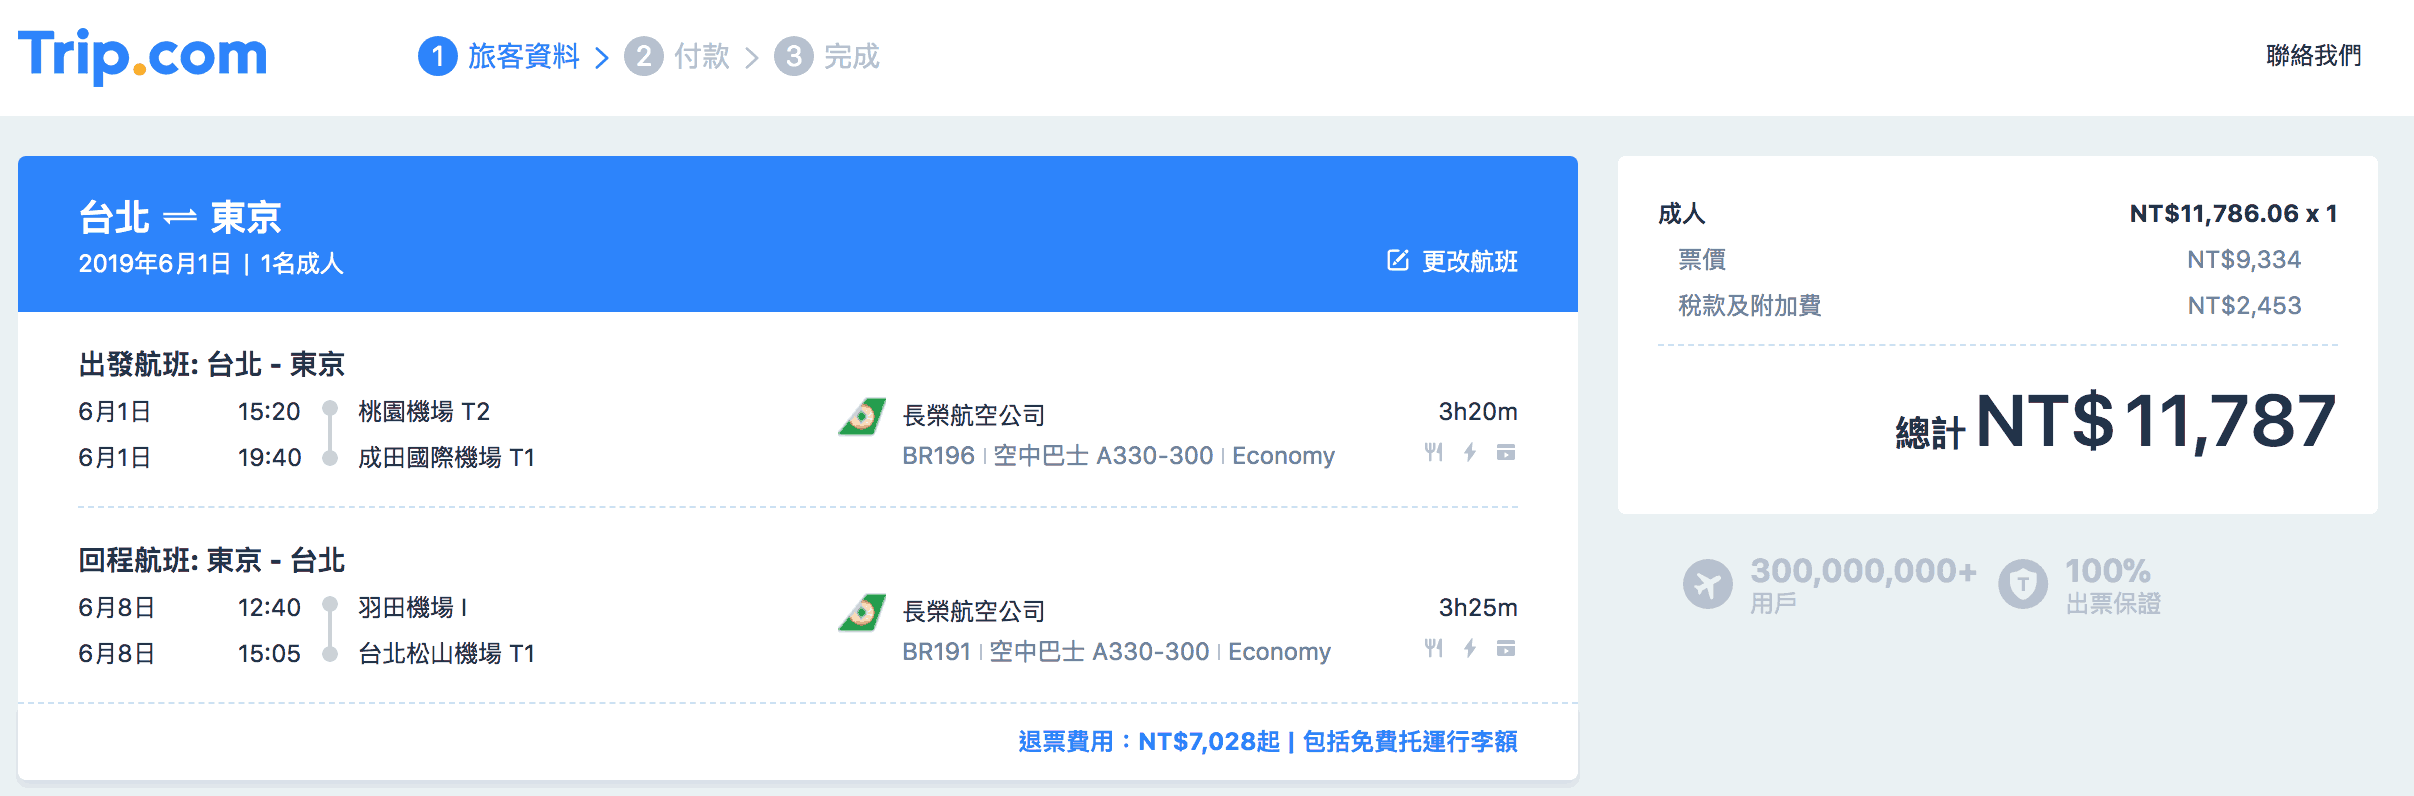  trip.com訂機票 - 價差示範 / 台北往東京